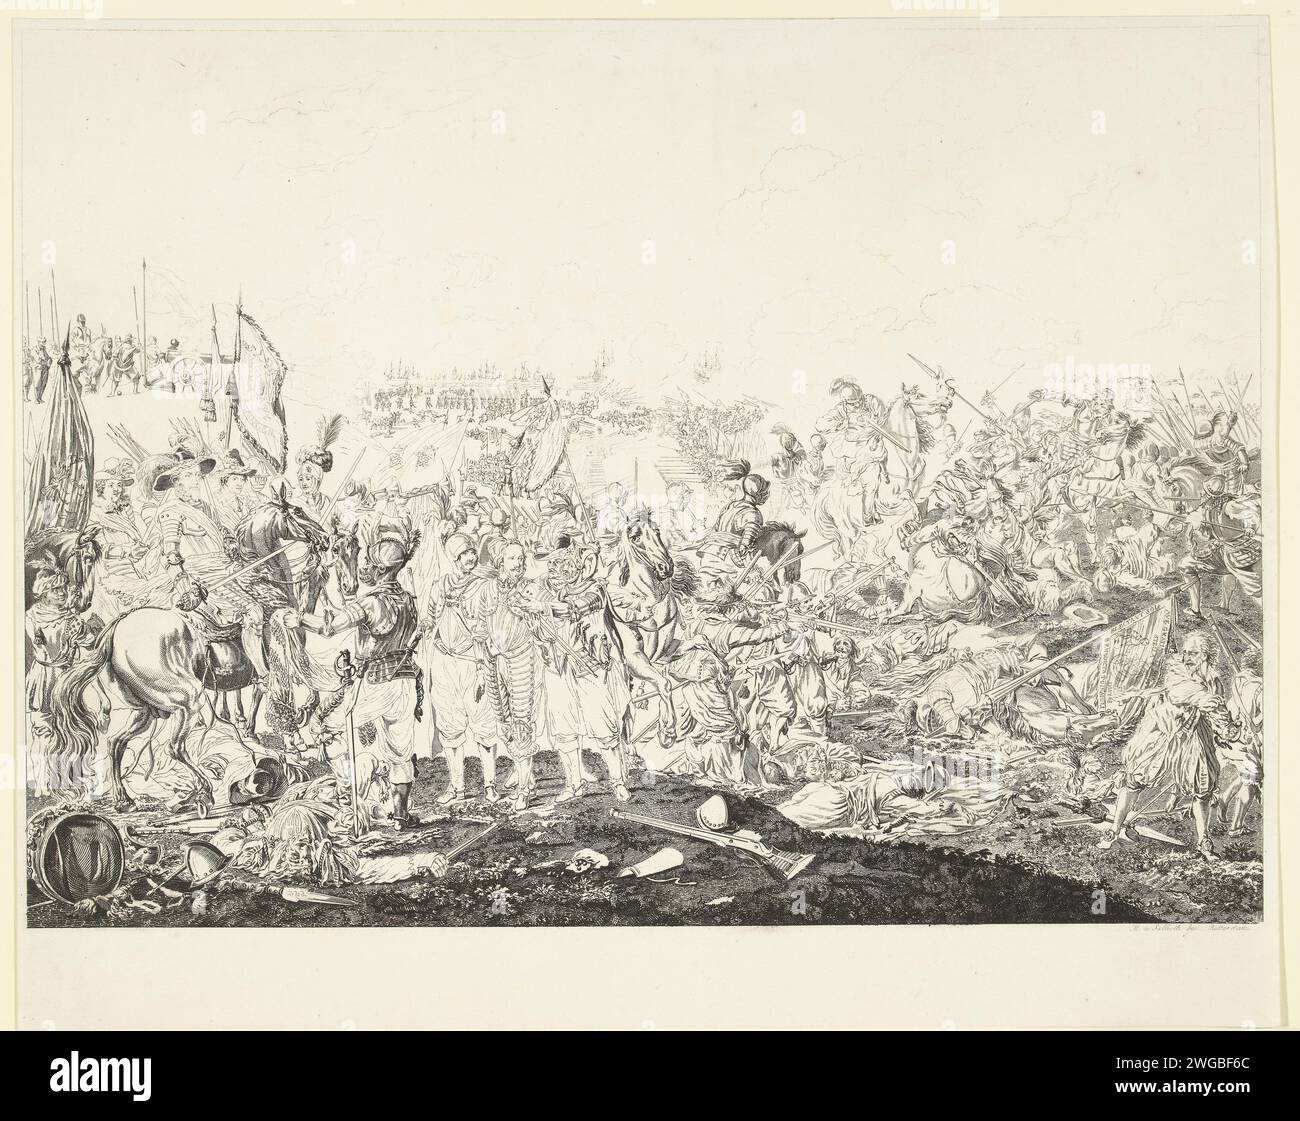 Maurits remporte la victoire à la bataille de Nieuwpoort, 1600, 1775 - 1791 imprimer la bataille de Nieuwpoort, 2 juillet 1600. Au premier plan à gauche, le prince Maurits à cheval, entouré de soldats et d'officiers, le Franciscus emprisonné de Mendoza est conduit au prince. La bataille fait rage en arrière-plan. Preuve de l'état inachevé. Bataille de gravure sur papier des pays bas (+ forces terrestres) Nieuwpoort (Belgique) Banque D'Images